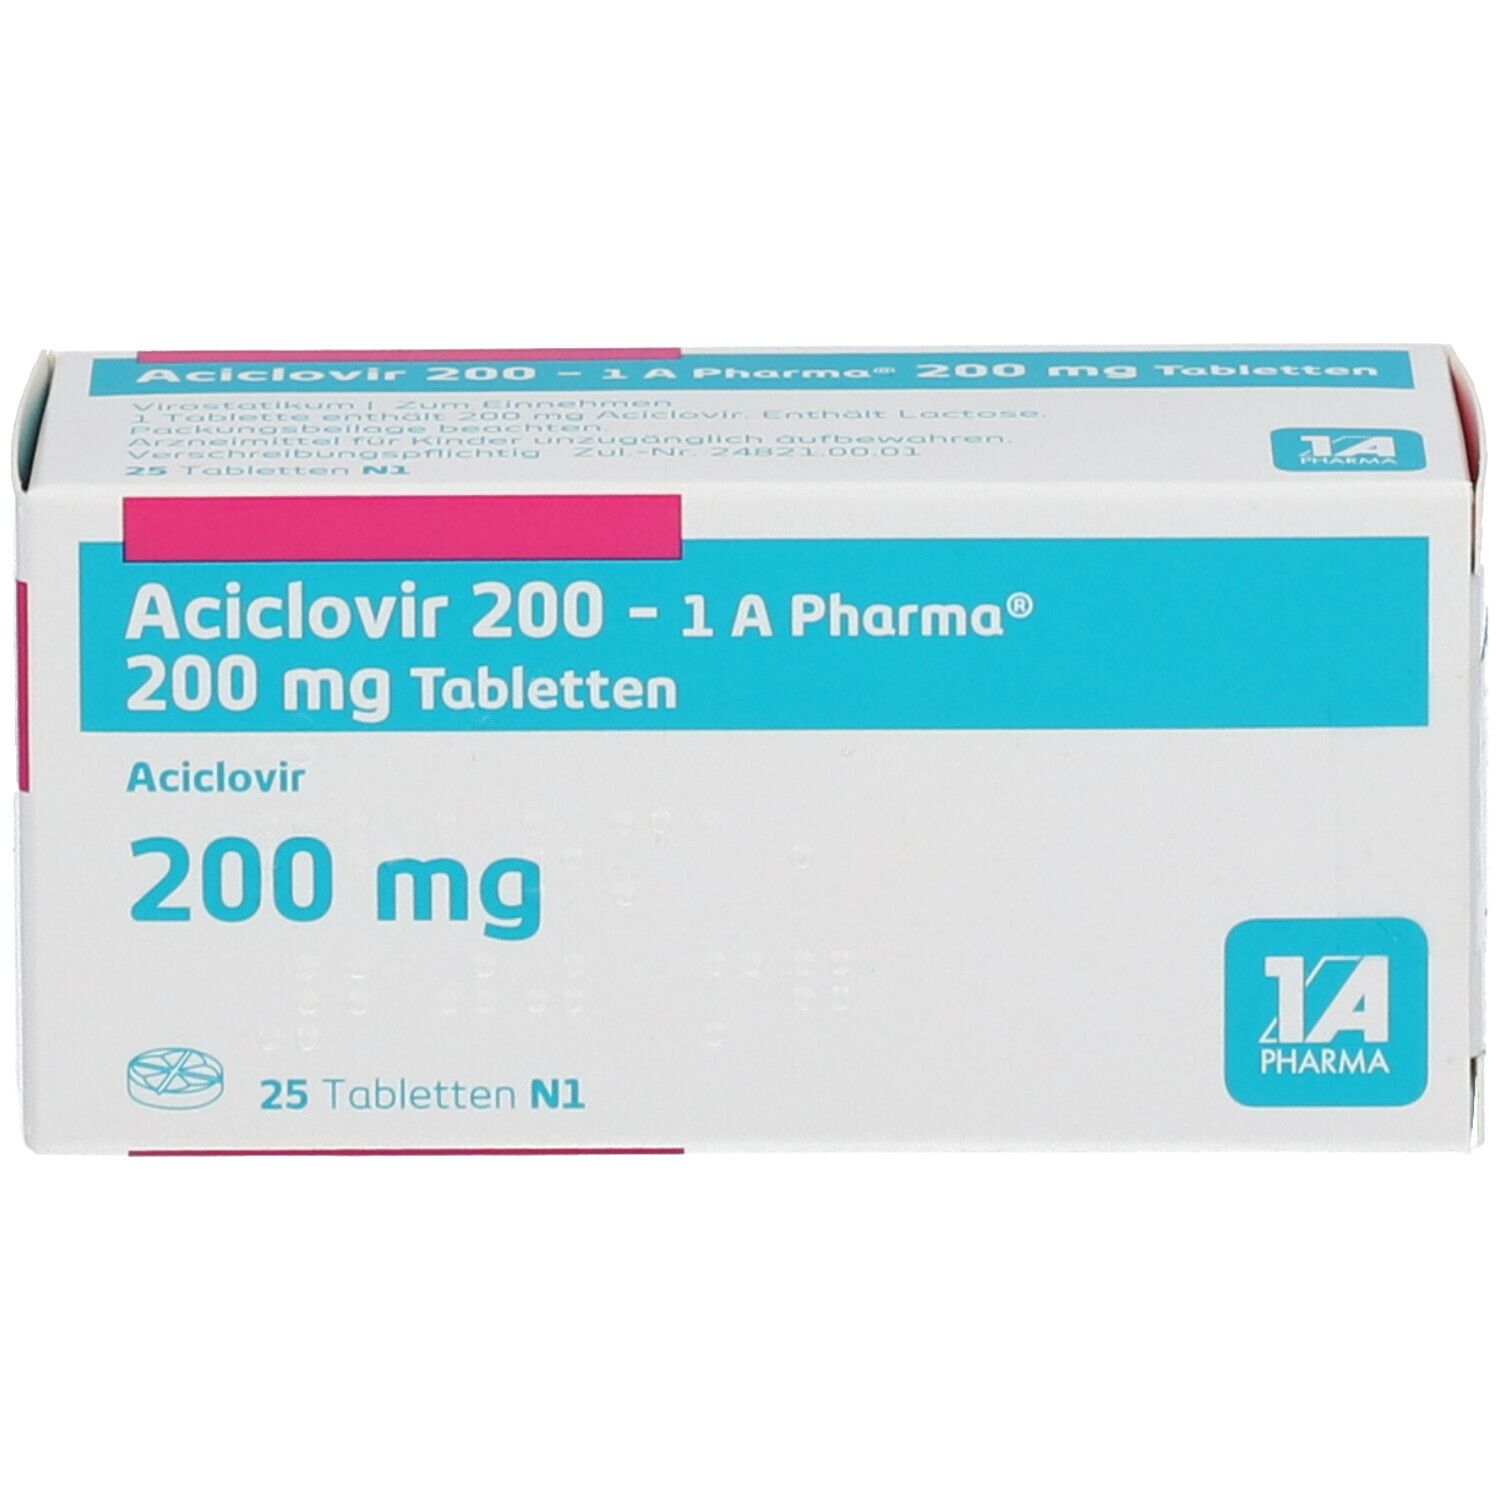 Aciclovir 200 1A Pharma®